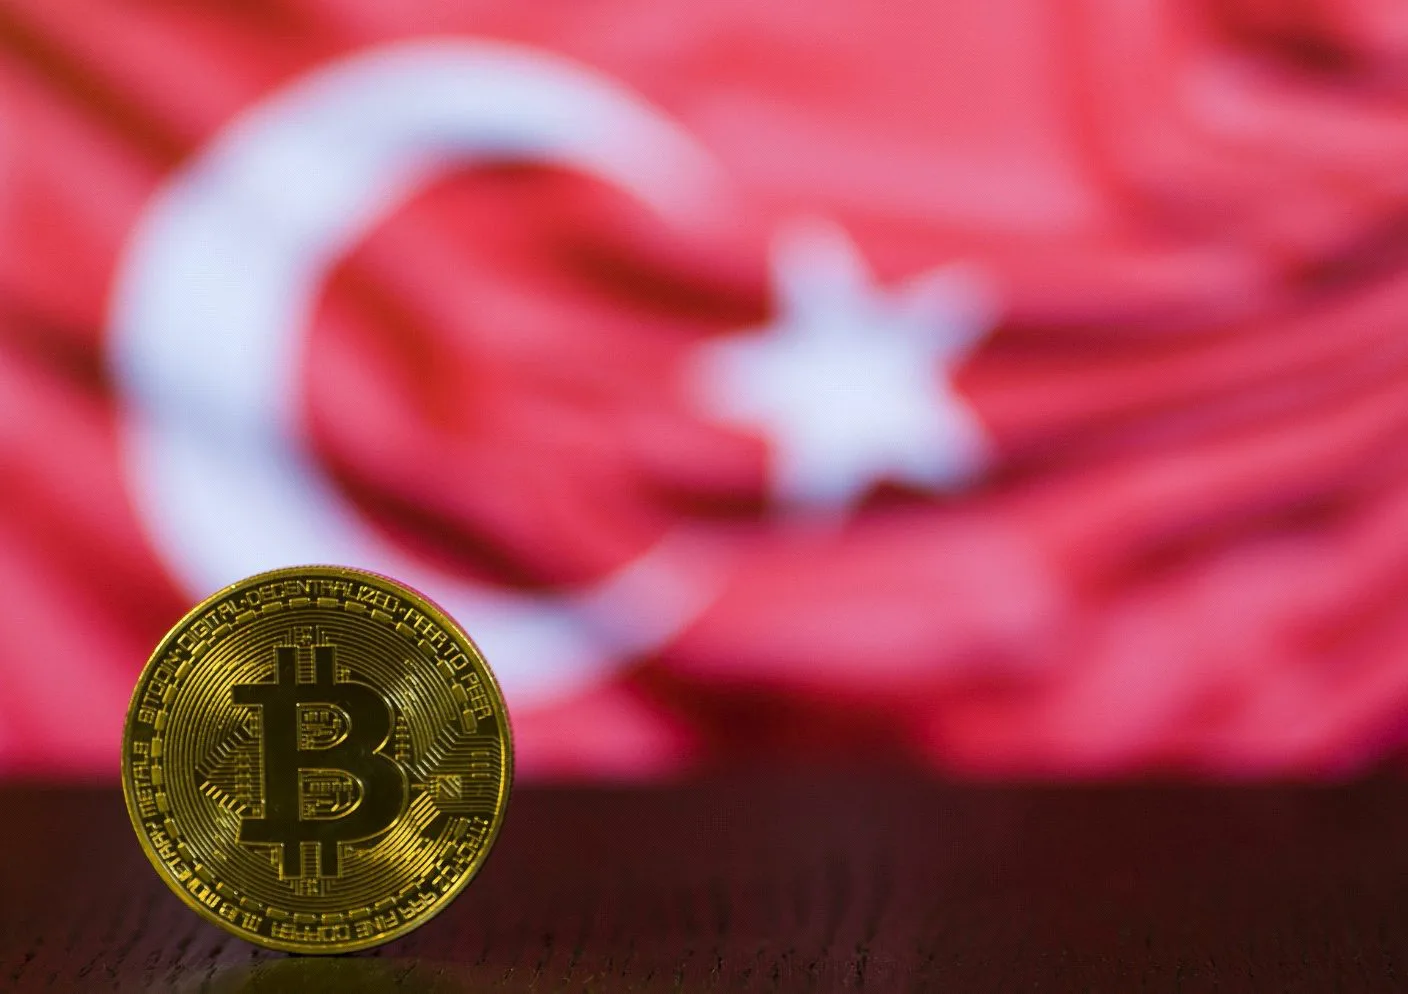 O nouă platformă de criptomonede din Turcia s-a prăbușit. Proprietarul a fost reținut